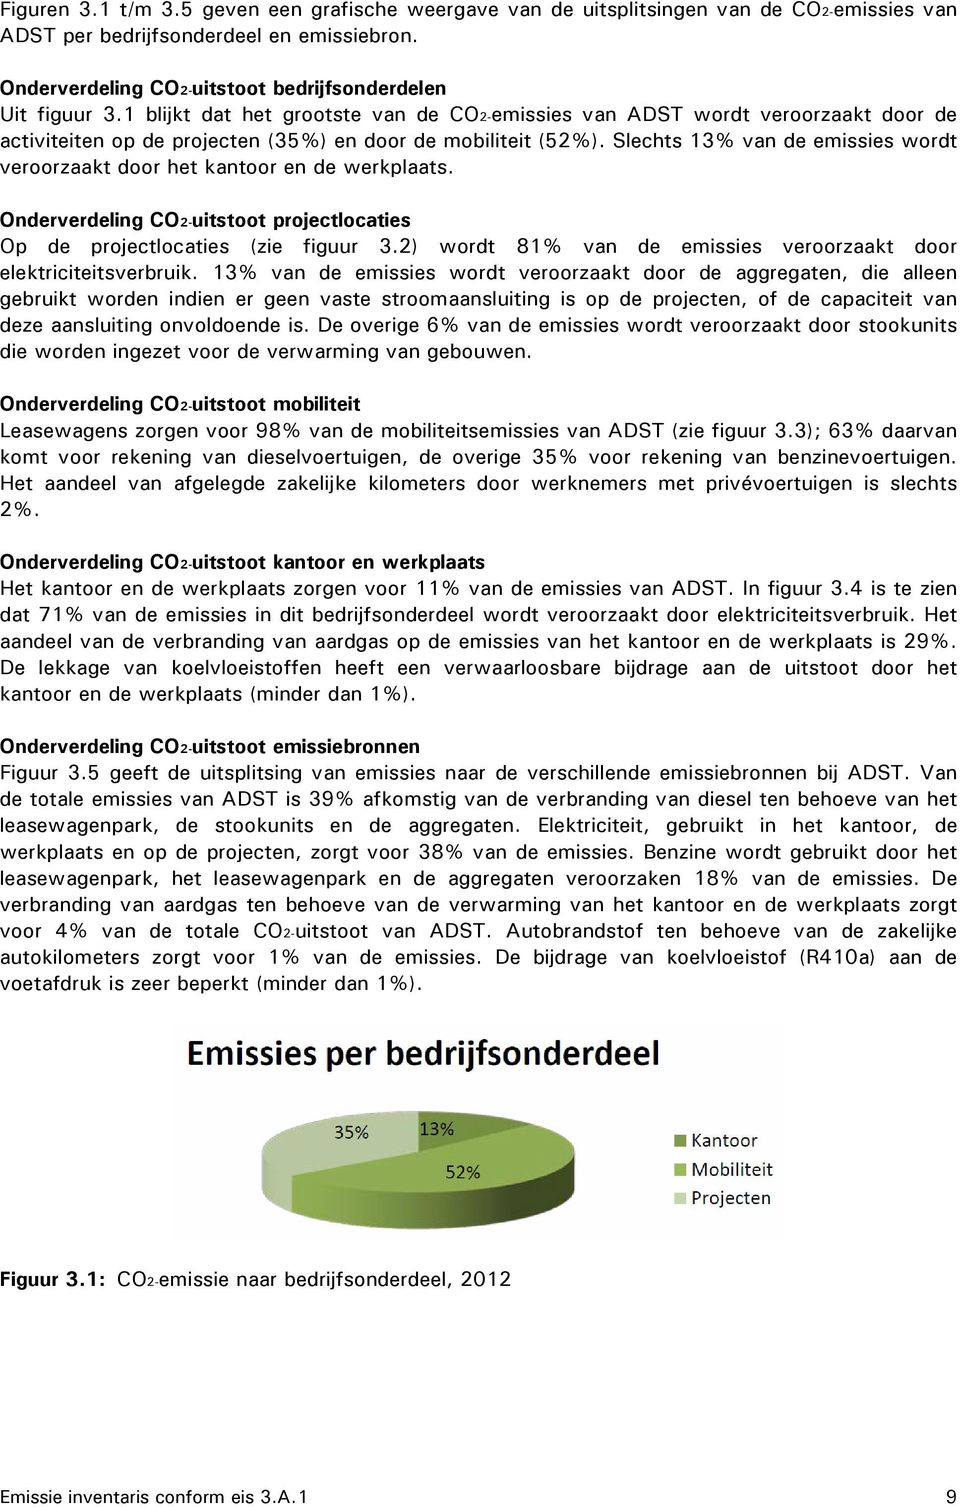 Slechts 13% van de emissies wordt veroorzaakt door het kantoor en de werkplaats. Onderverdeling CO2-uitstoot projectlocaties Op de projectlocaties (zie figuur 3.